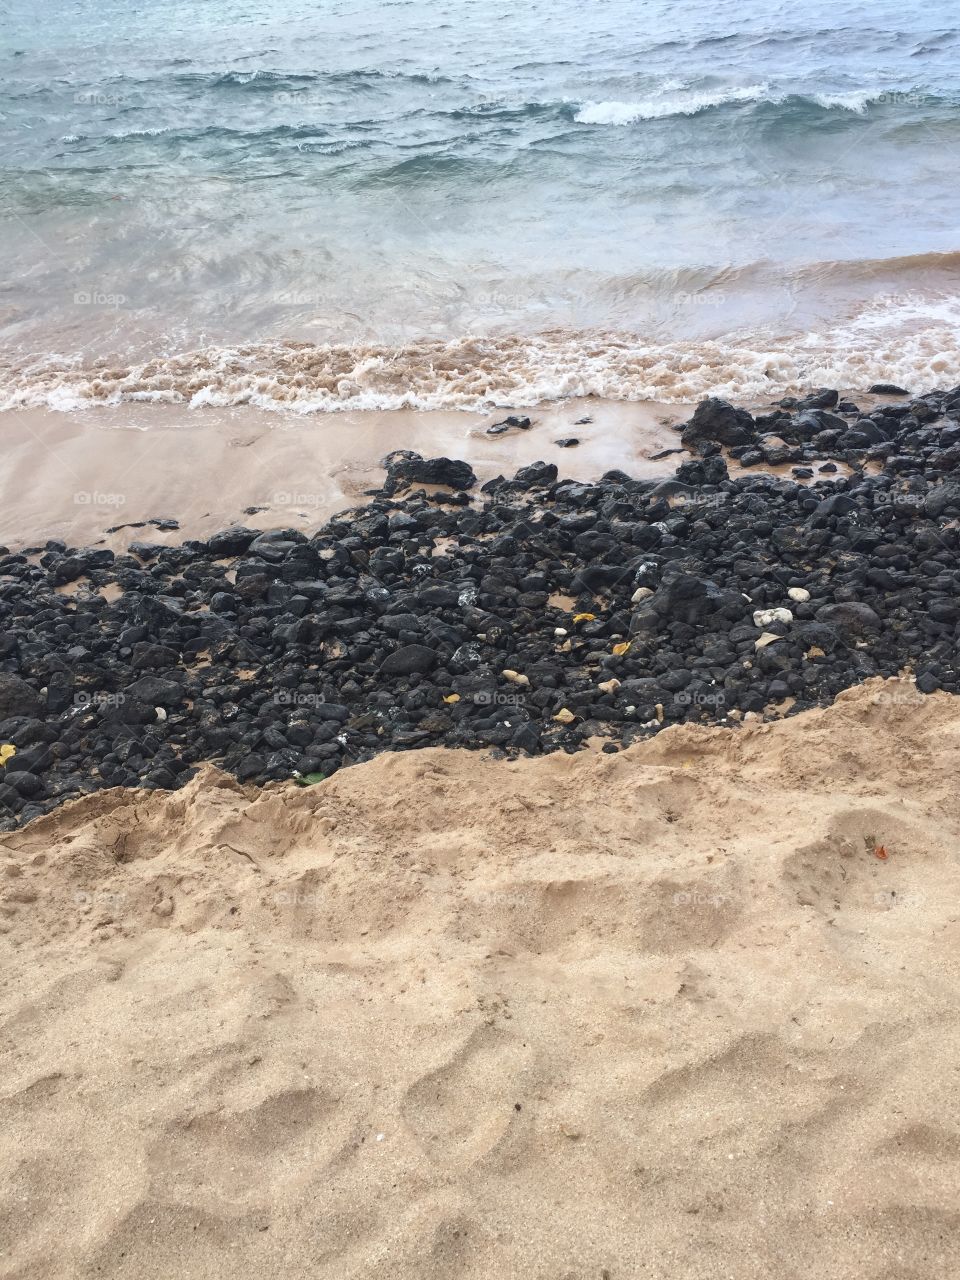 Maui beaches